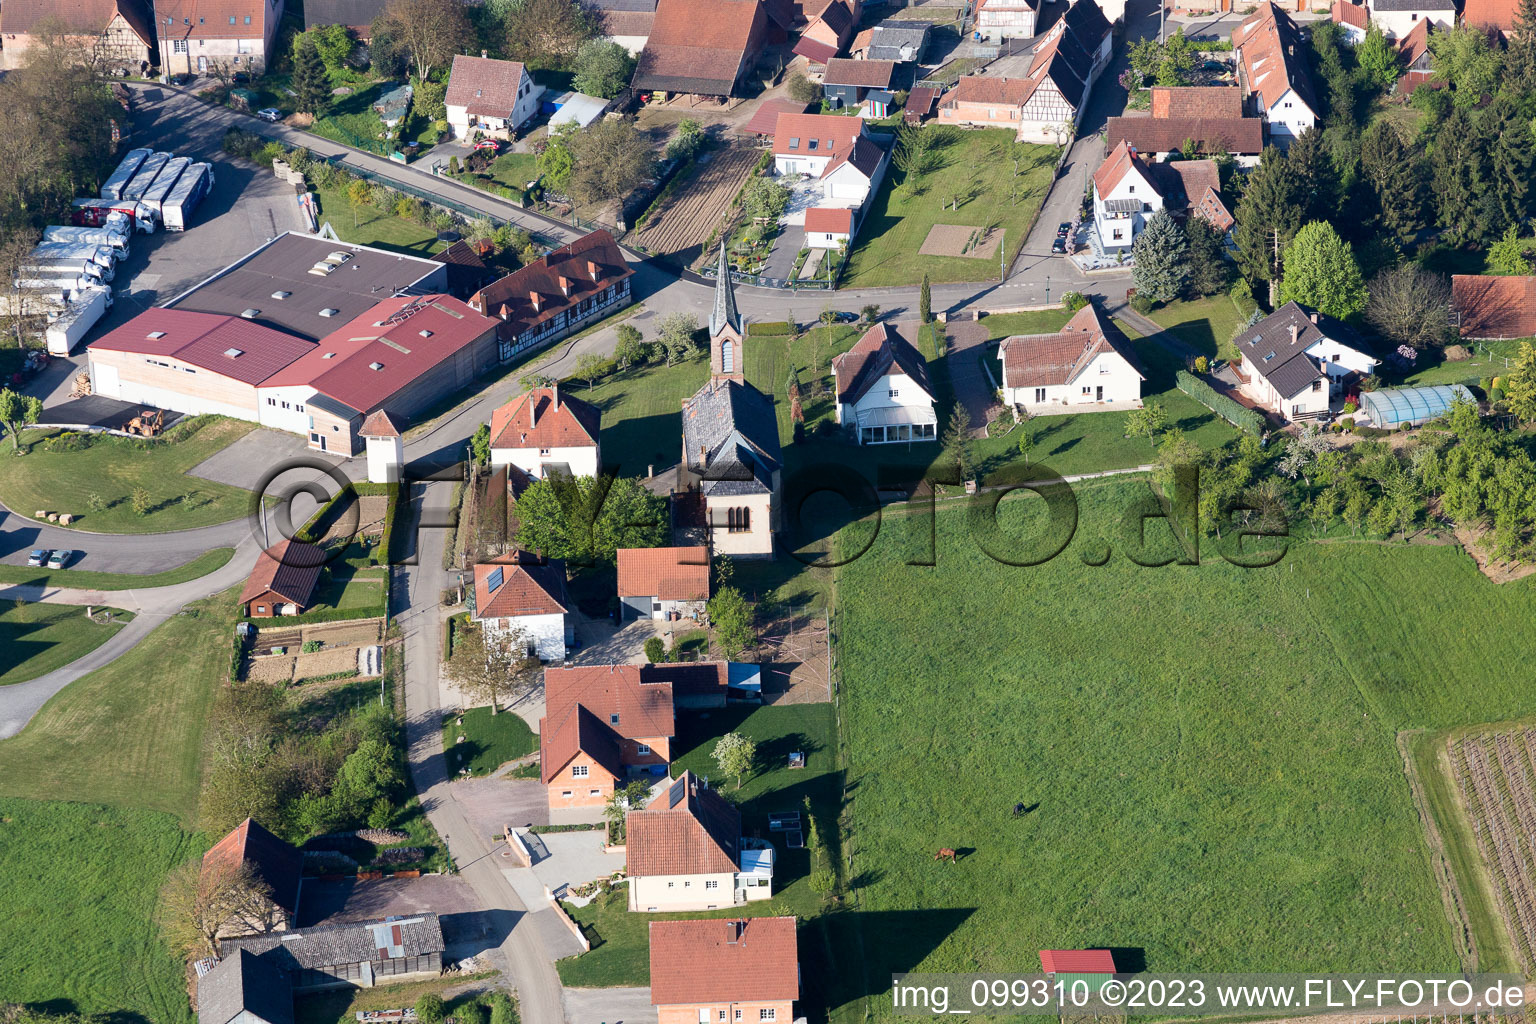 Cleebourg im Bundesland Bas-Rhin, Frankreich von der Drohne aus gesehen